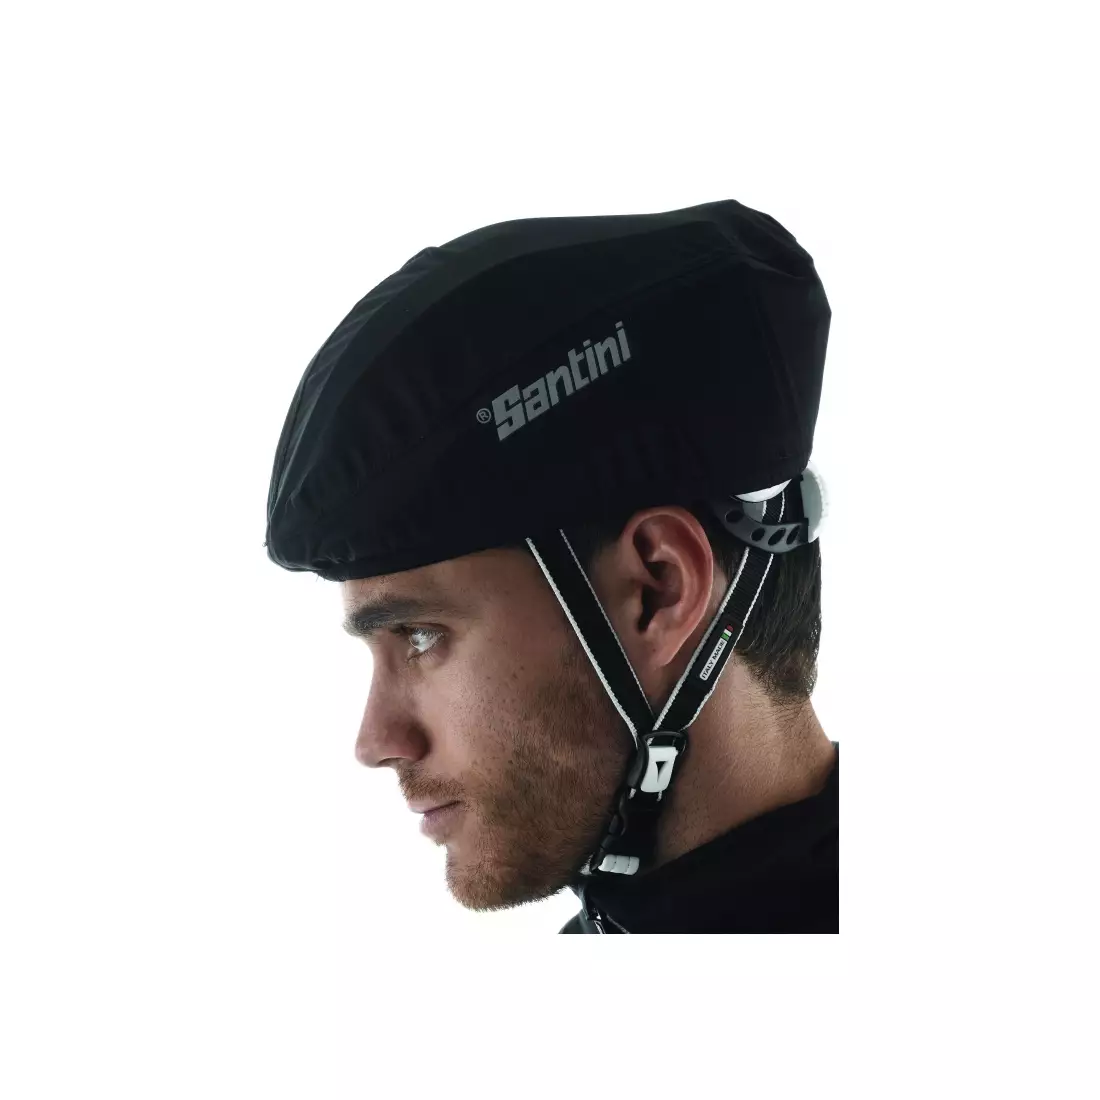 SANTINI GUARD - waterproof bicycle helmet cover